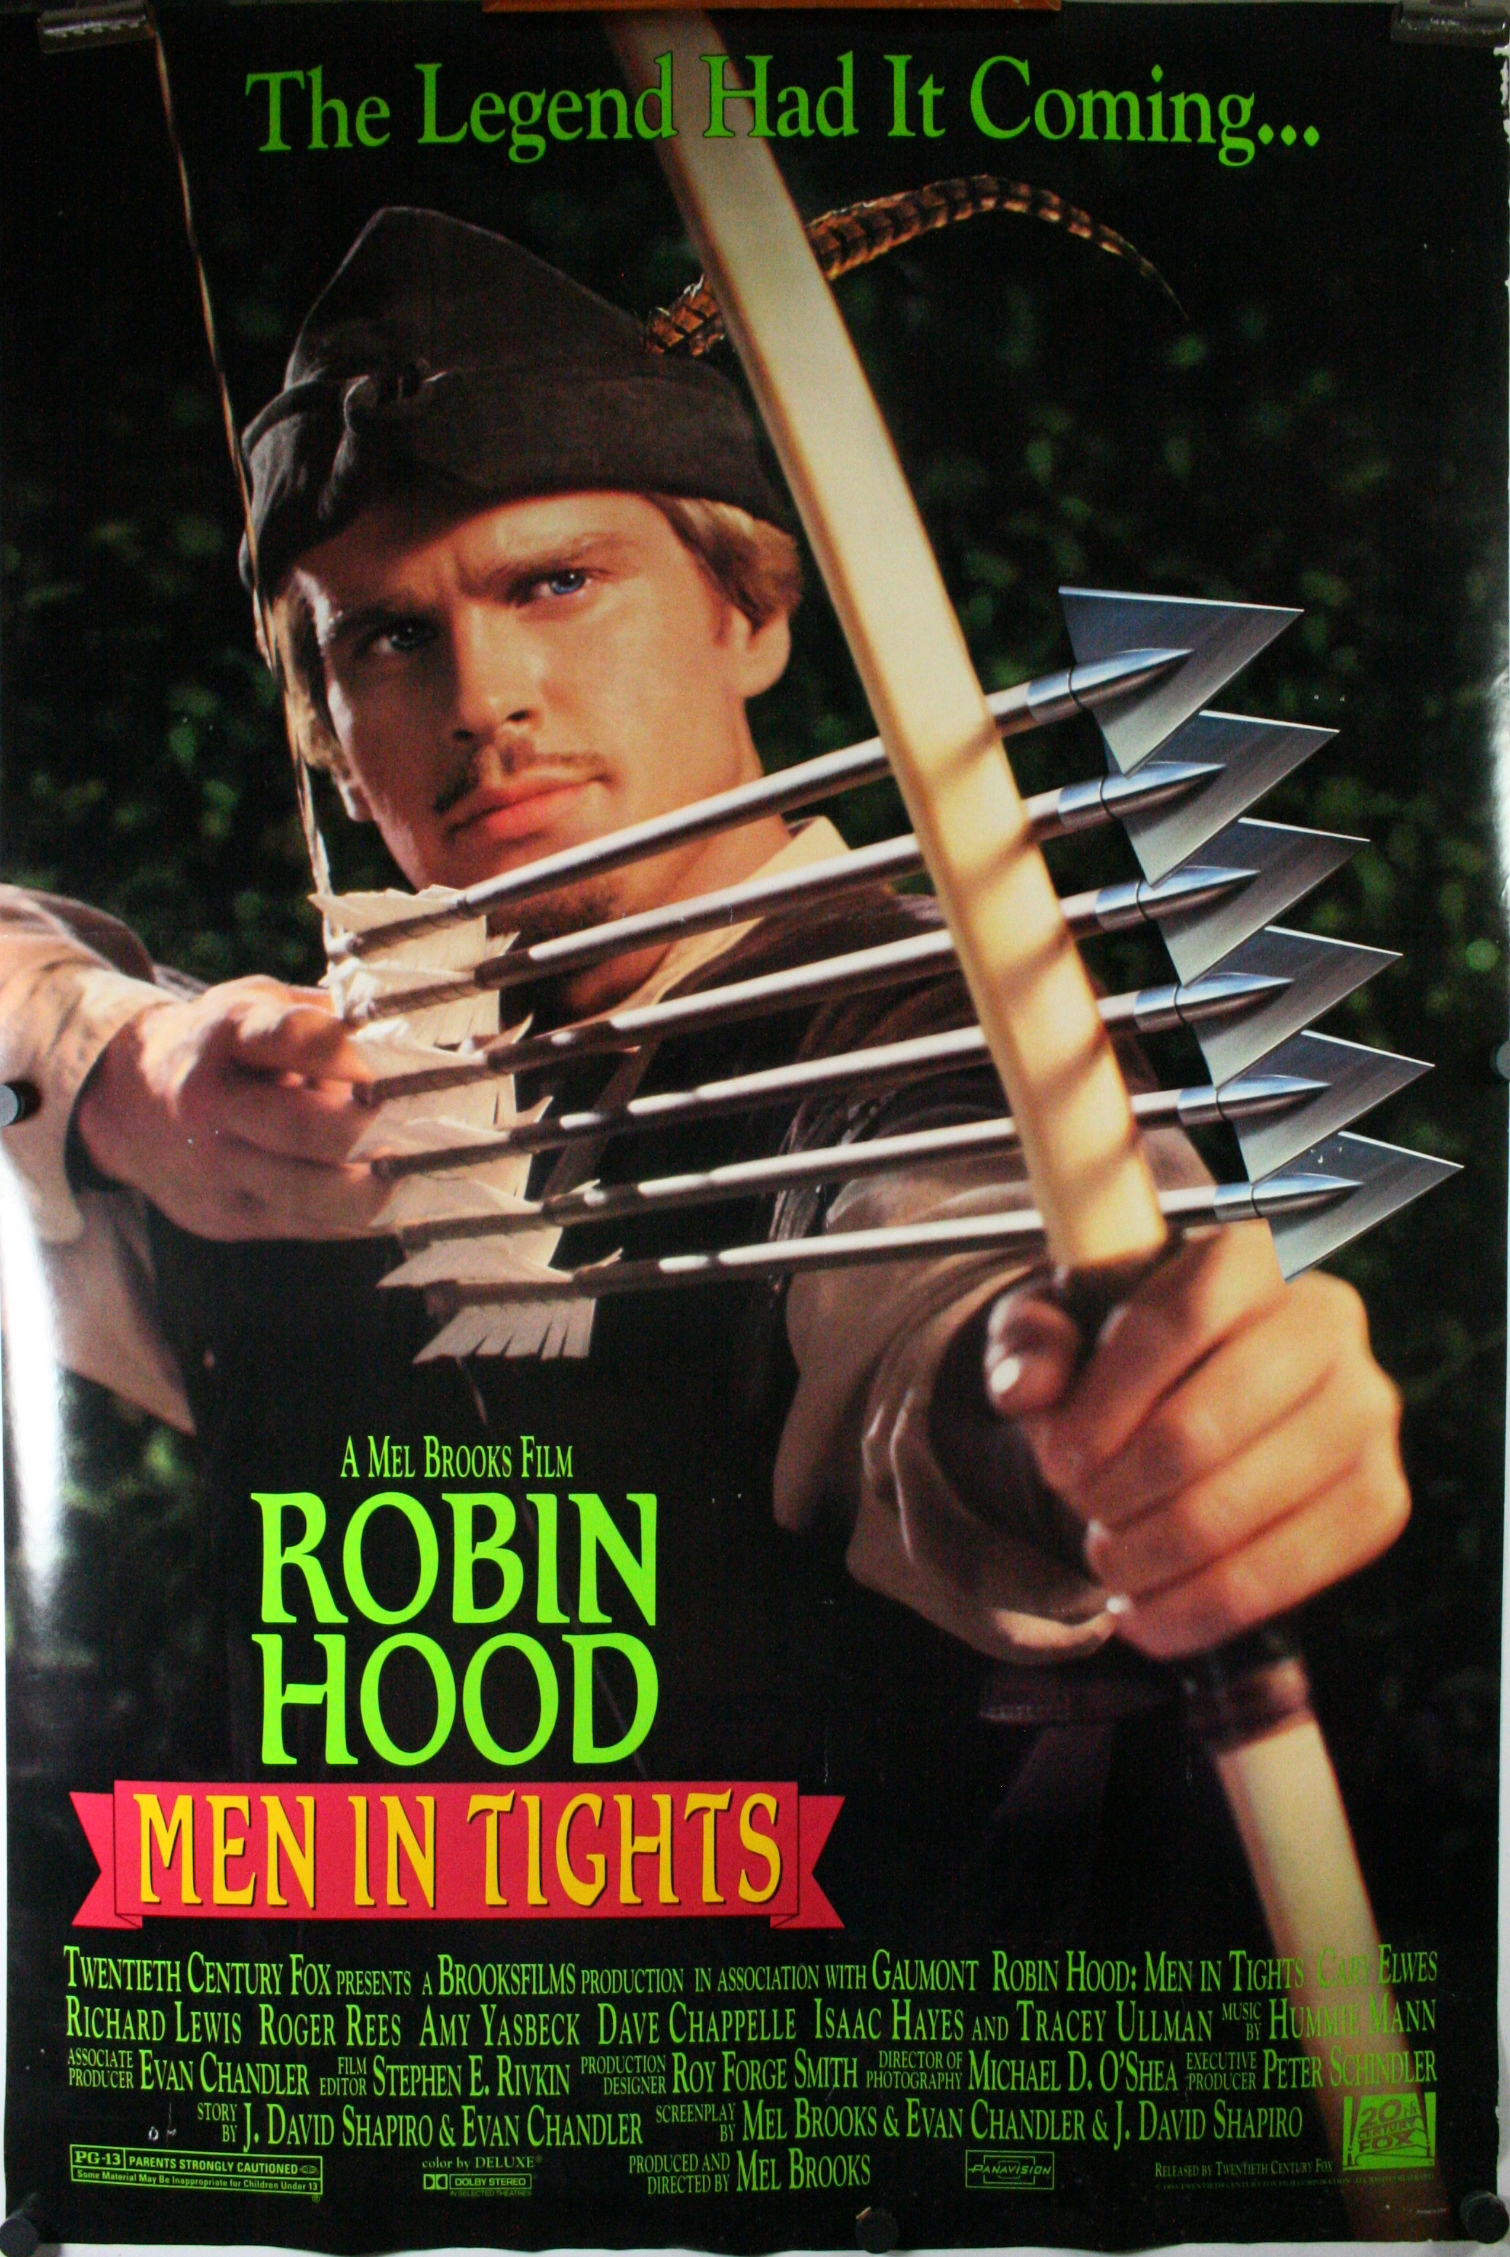 ROBIN HOOD MEN IN TIGHTS, Original Mel Brooks Film Poster